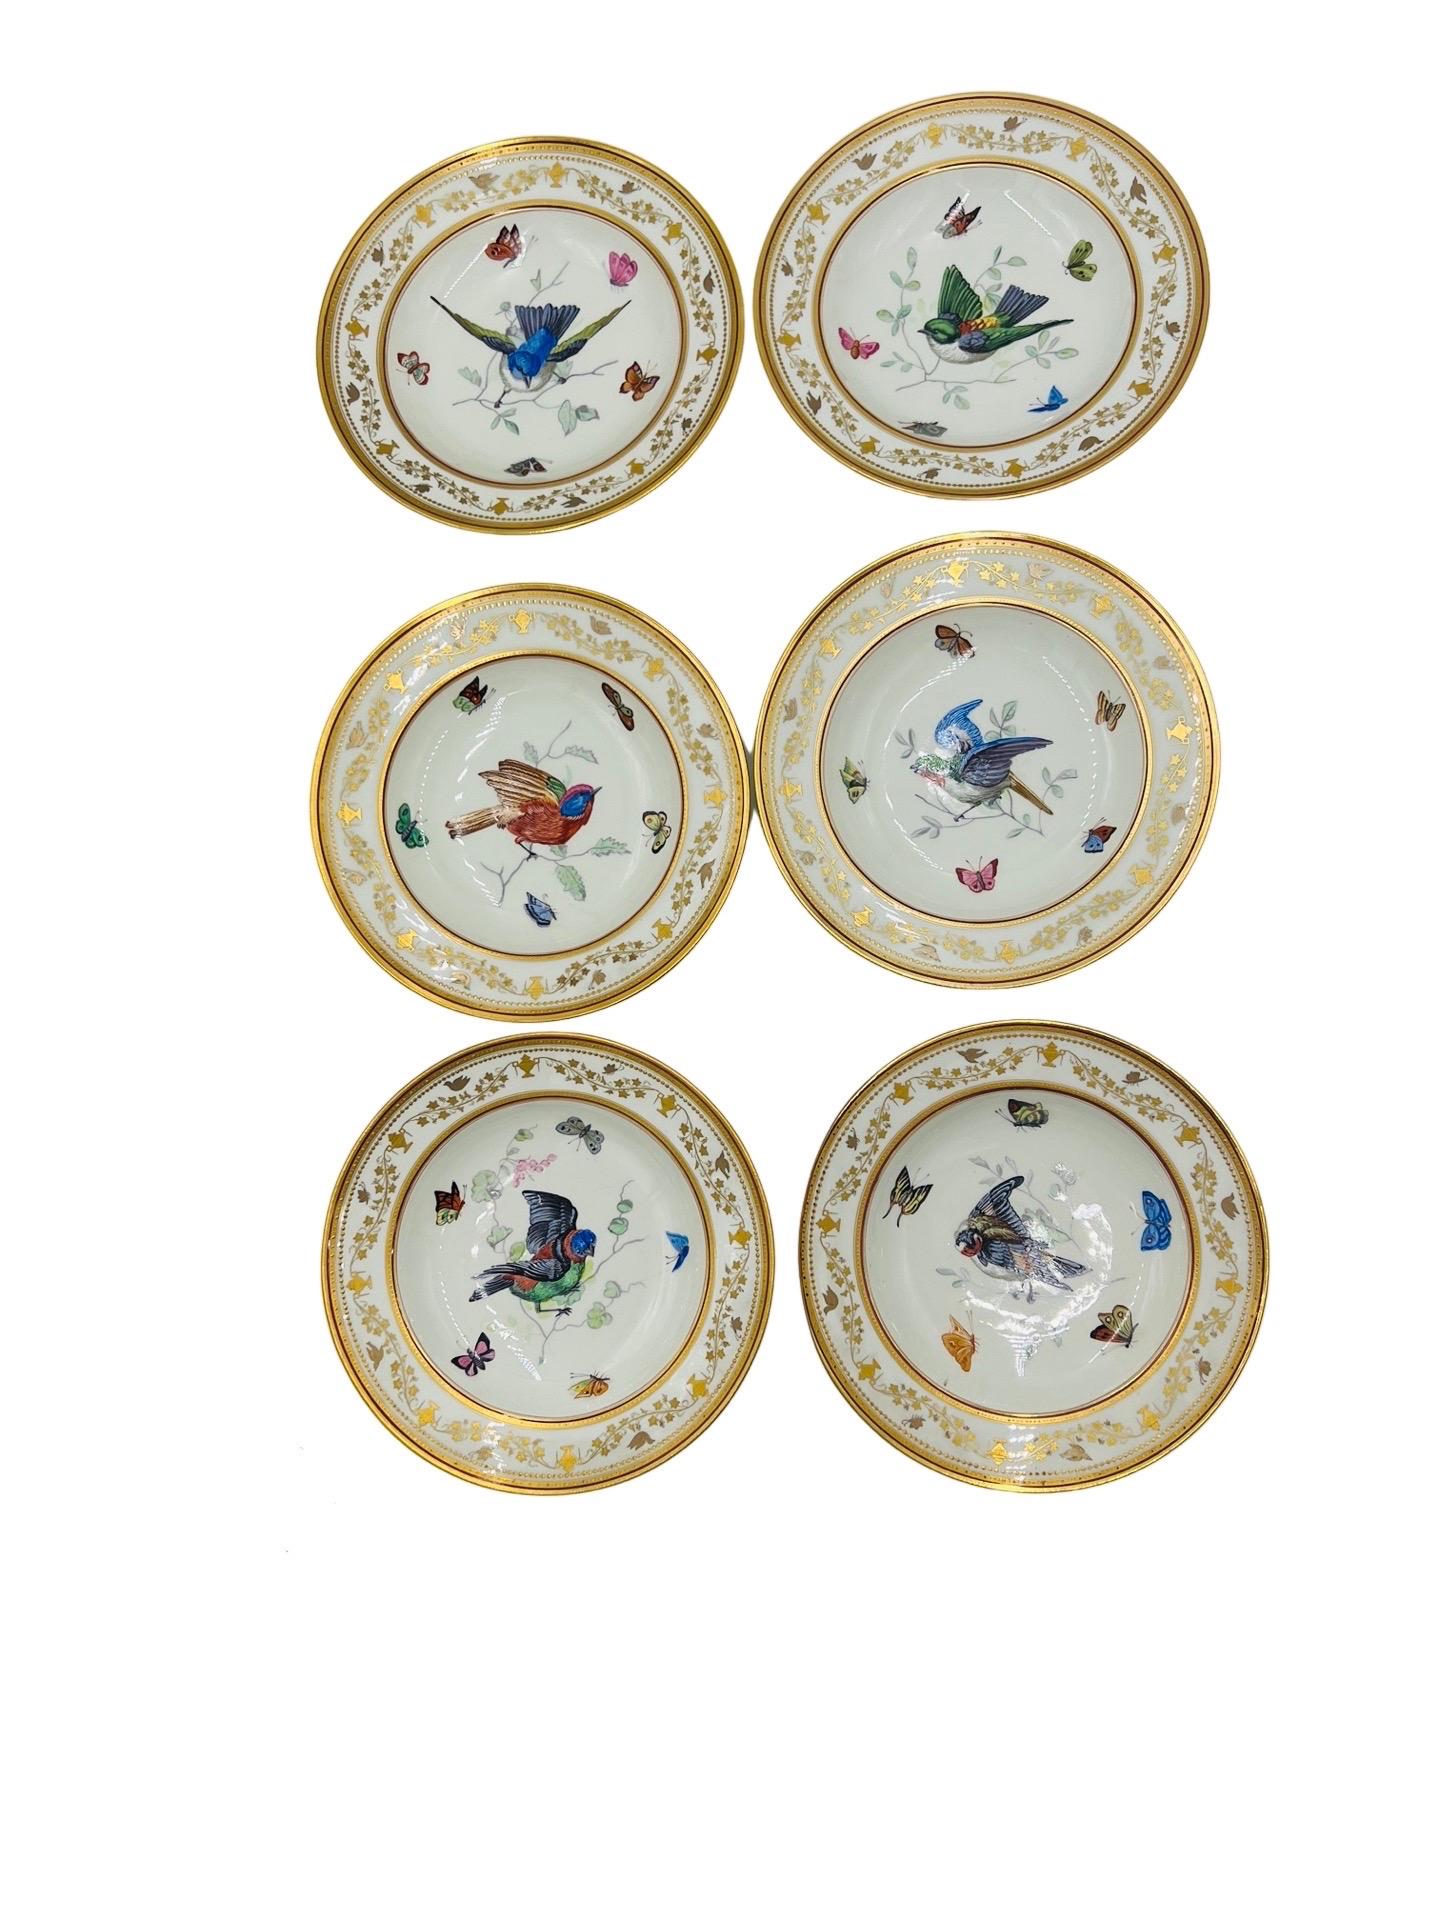 Un ensemble incroyablement rare d'assiettes Royal Vienna représentant 12 différentes assiettes d'oiseaux finement émaillées, accentuées par des papillons multicolores au centre des bols et un étonnant motif de vigne sur les bords qui présentent des